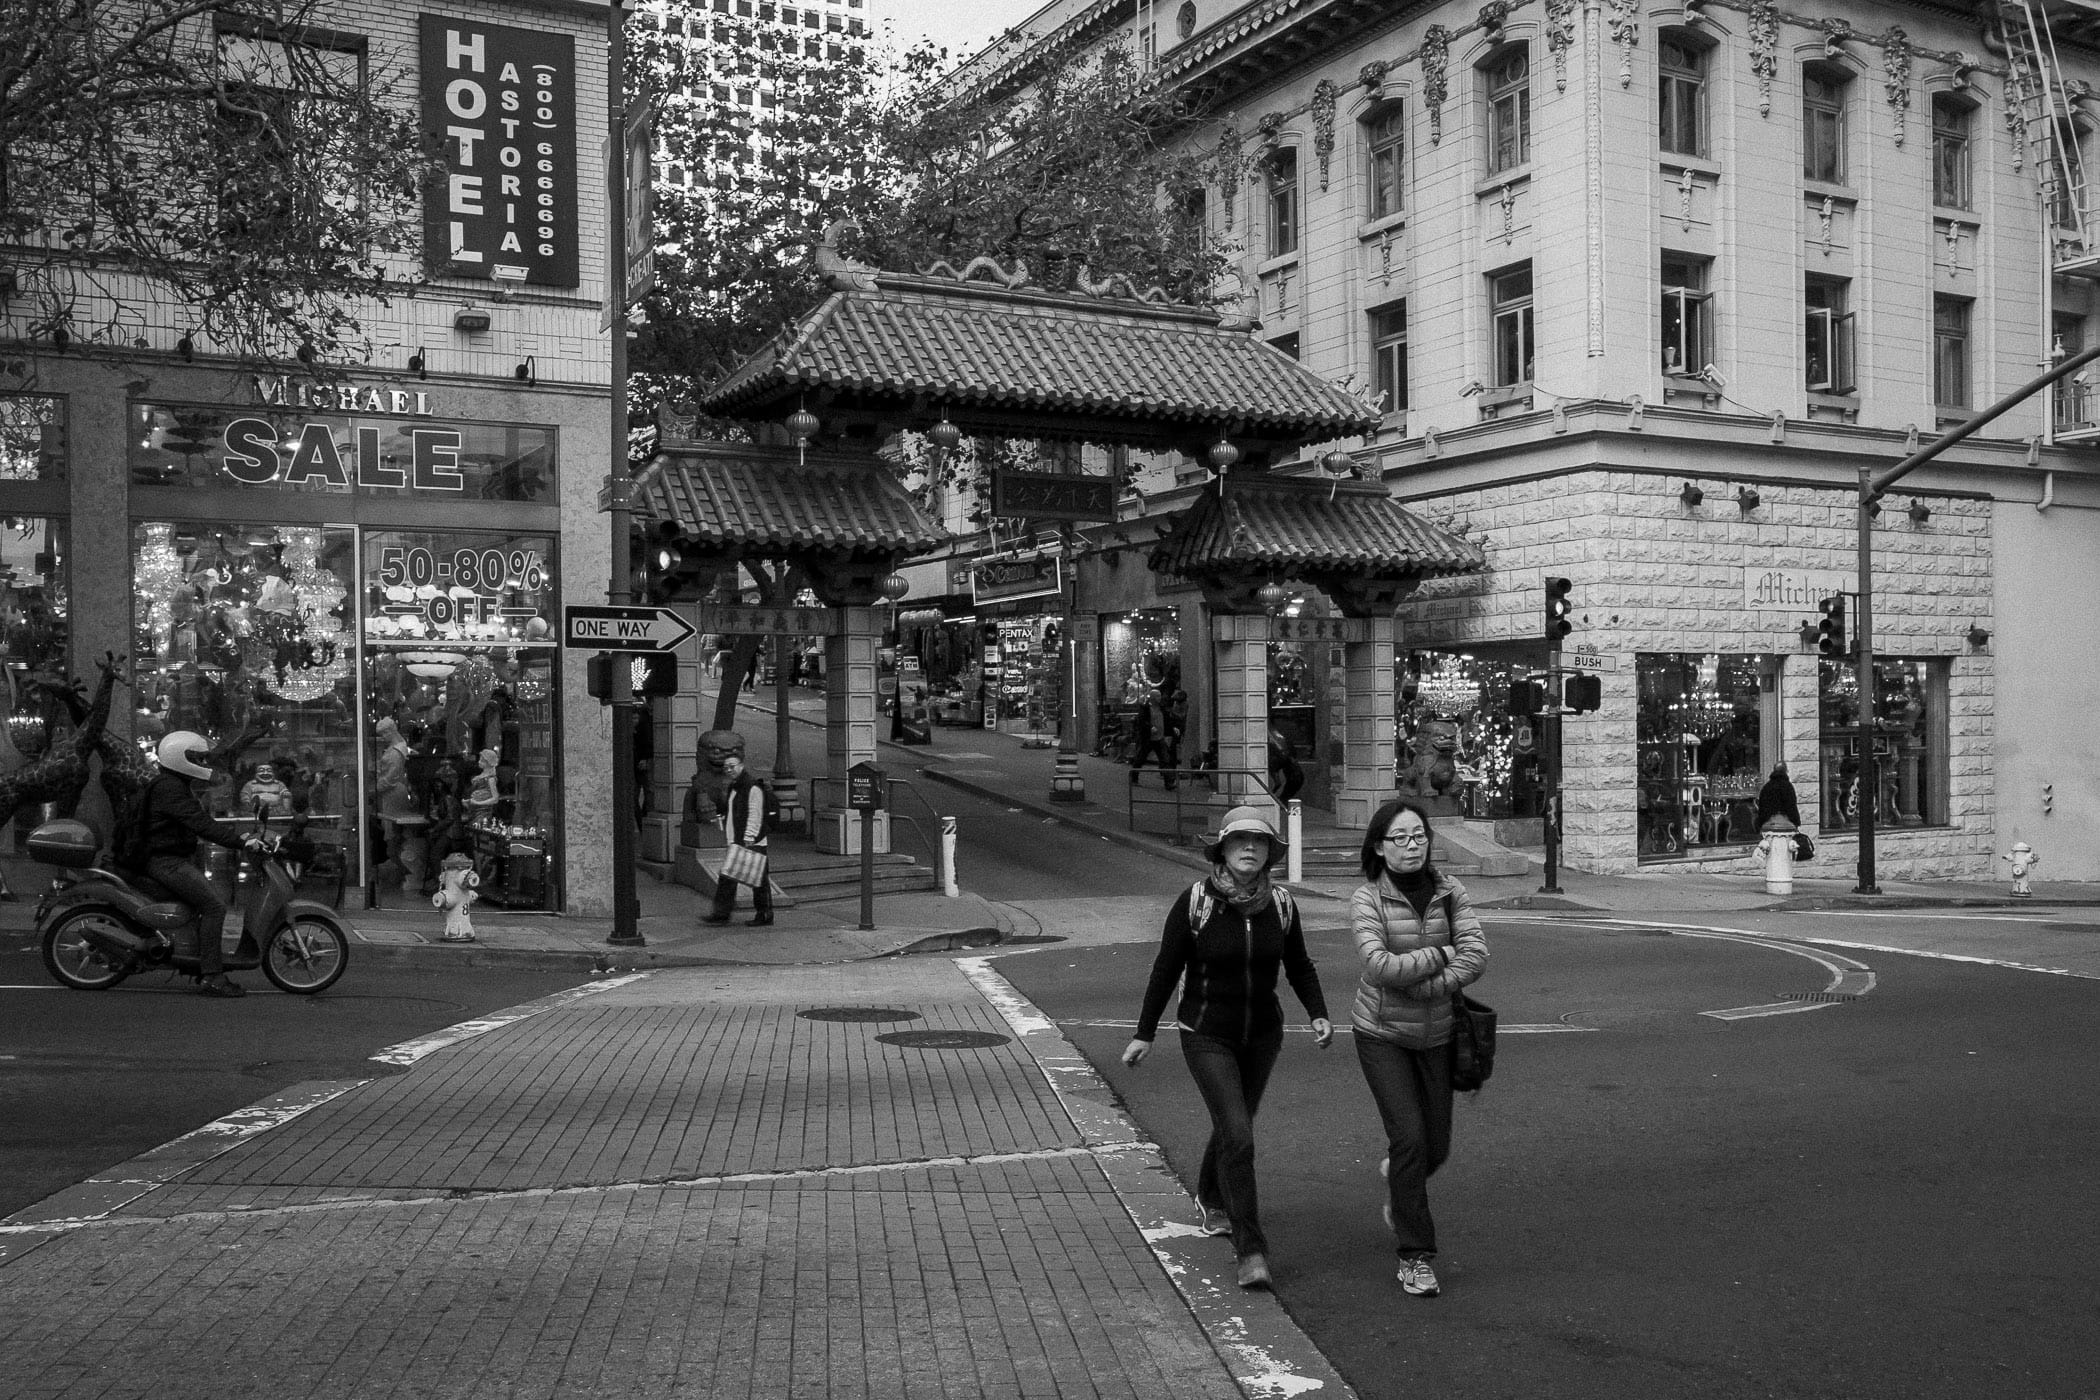 The Chinatown Dragon's Gate along San Francisco's Bush Street.